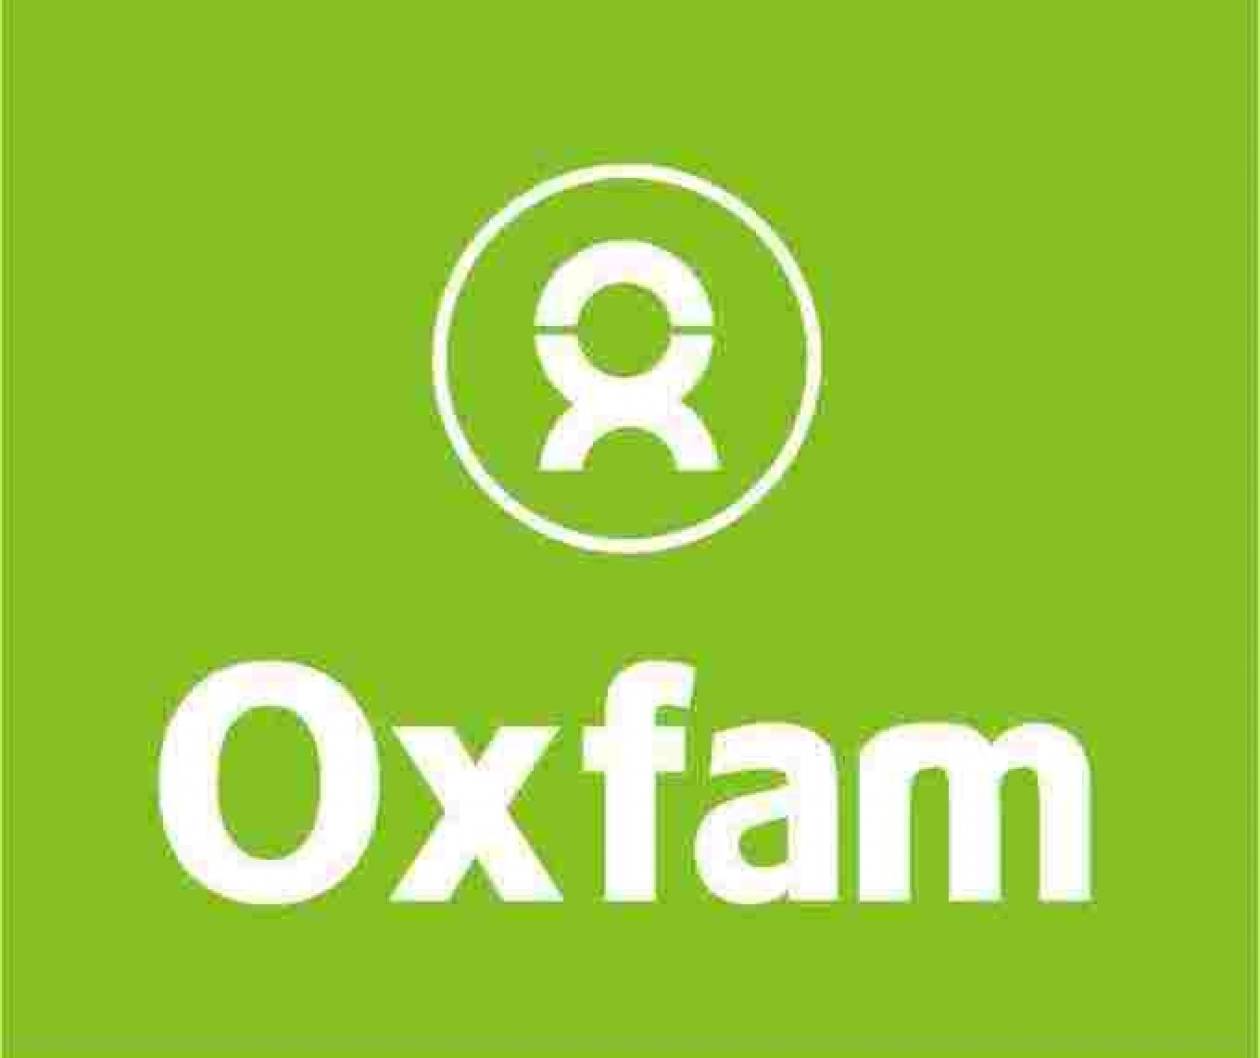 Oxfam: Η λιτότητα θα οδηγήσει εκατομμύρια πολίτες στη φτώχεια